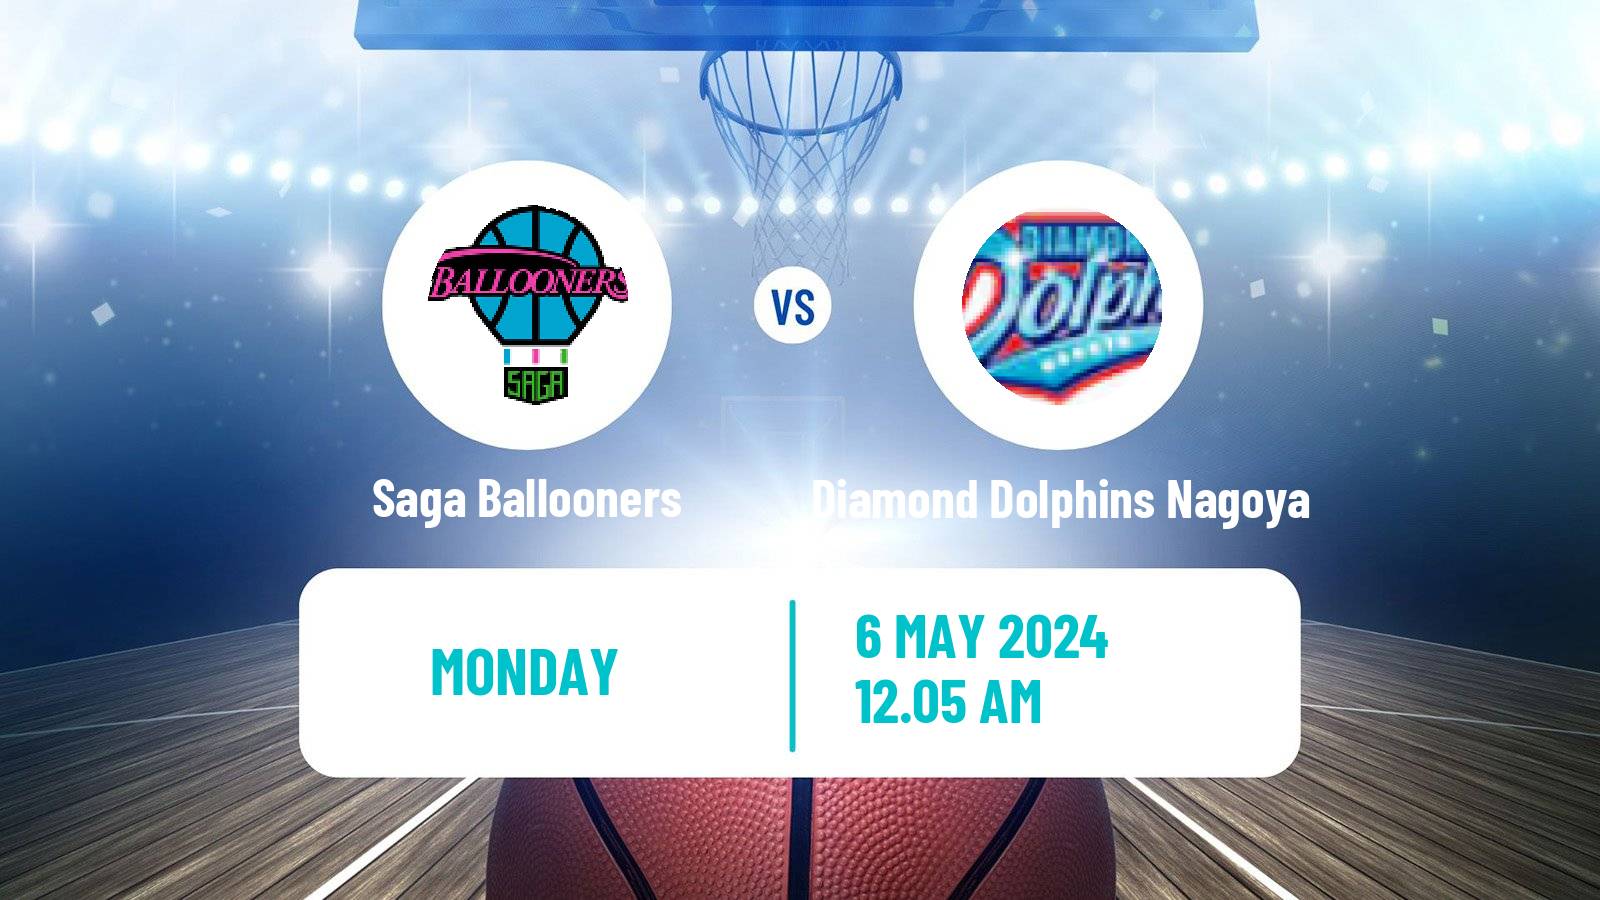 Basketball BJ League Saga Ballooners - Diamond Dolphins Nagoya